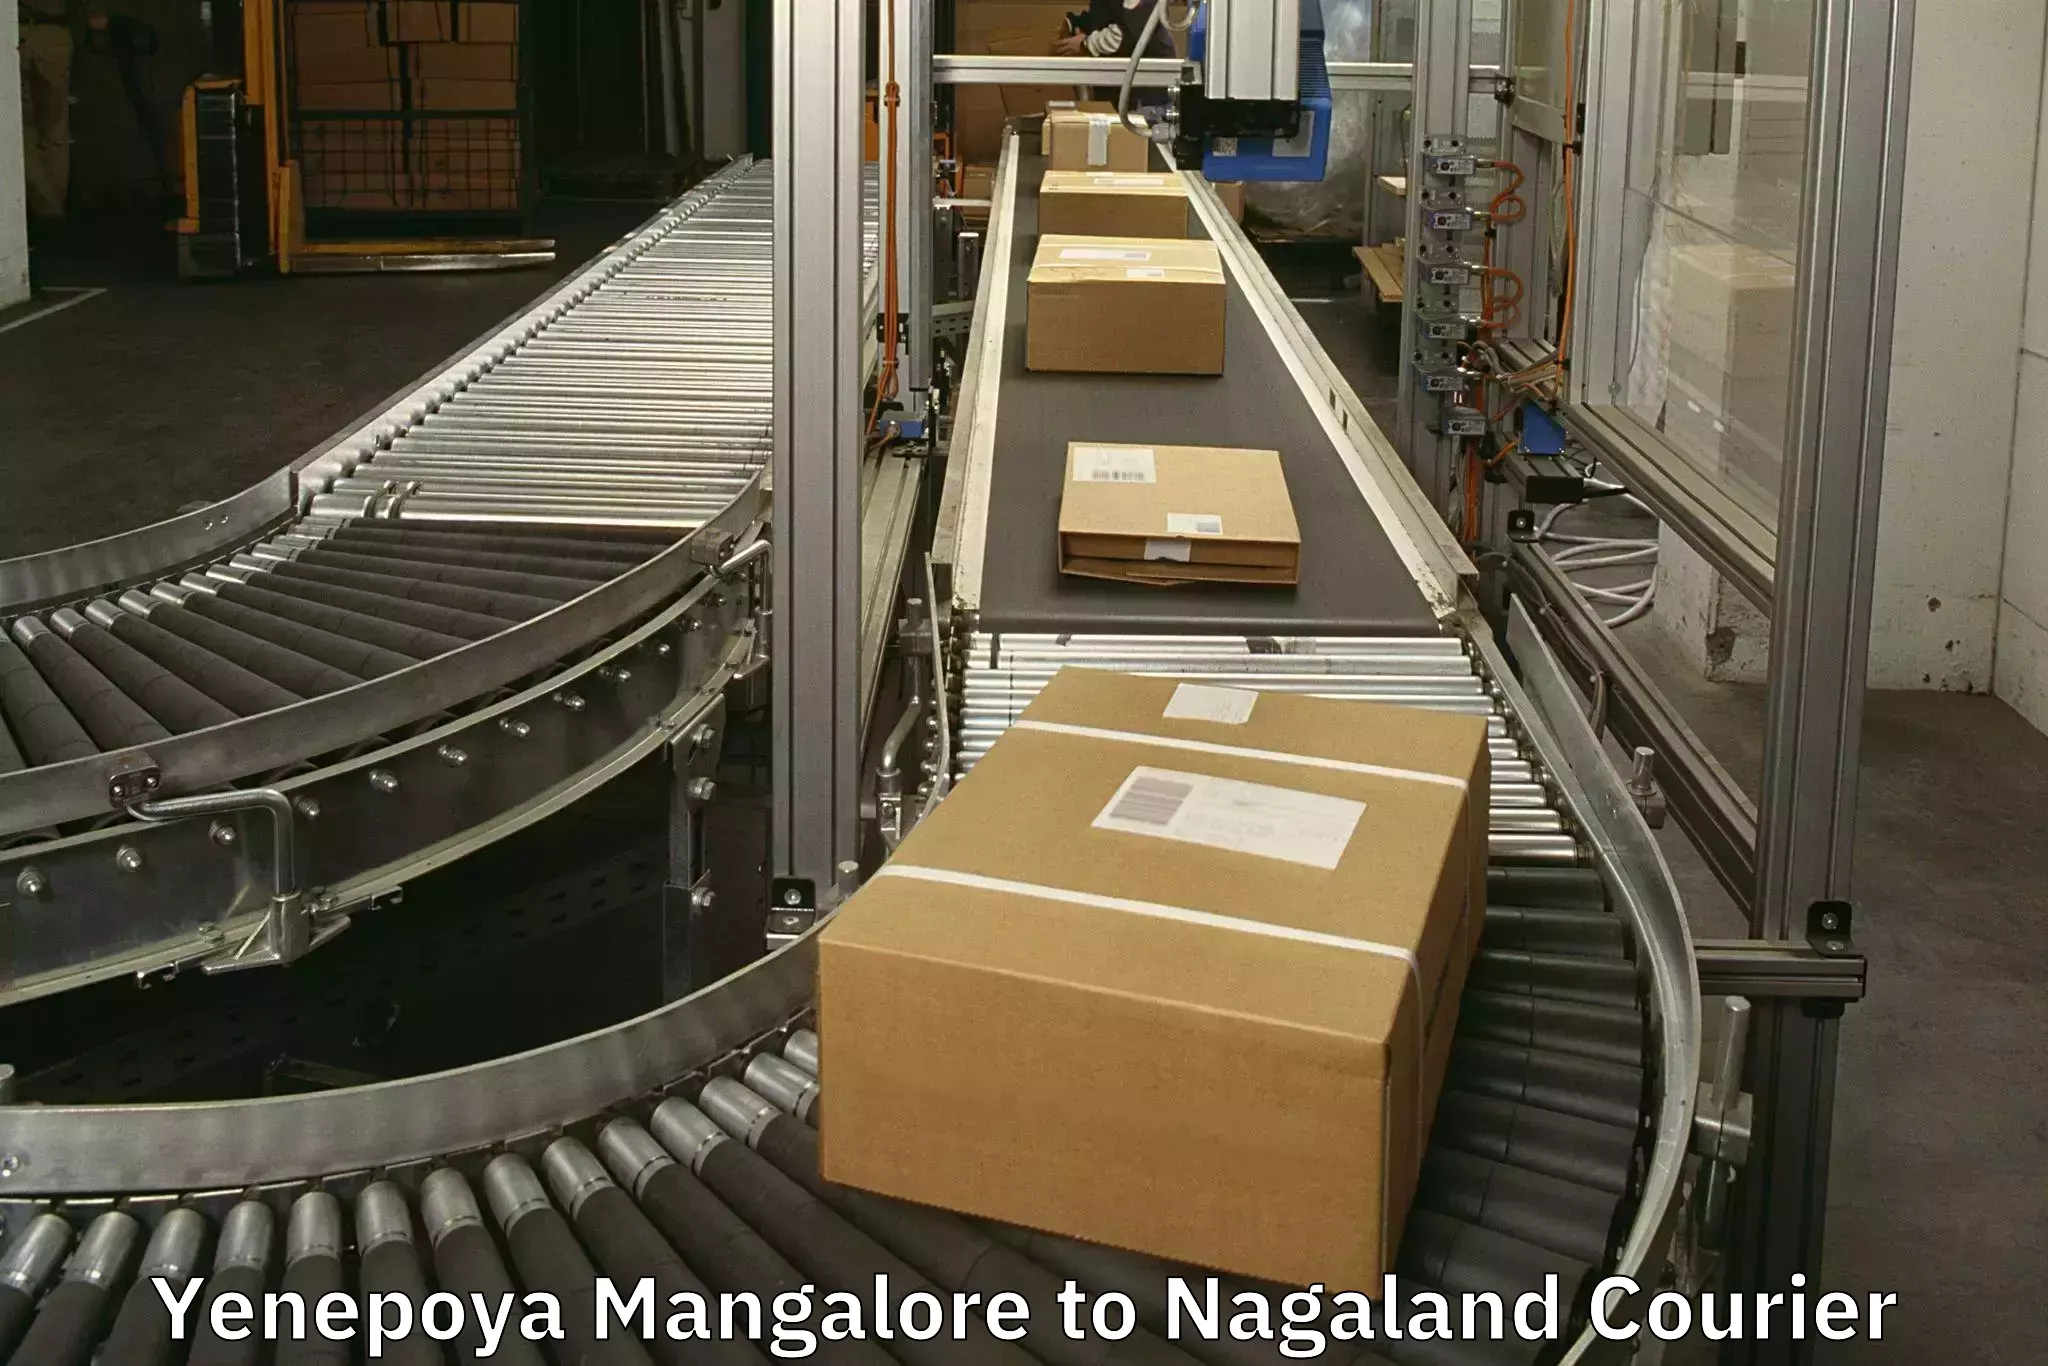 Baggage transport innovation Yenepoya Mangalore to Nagaland